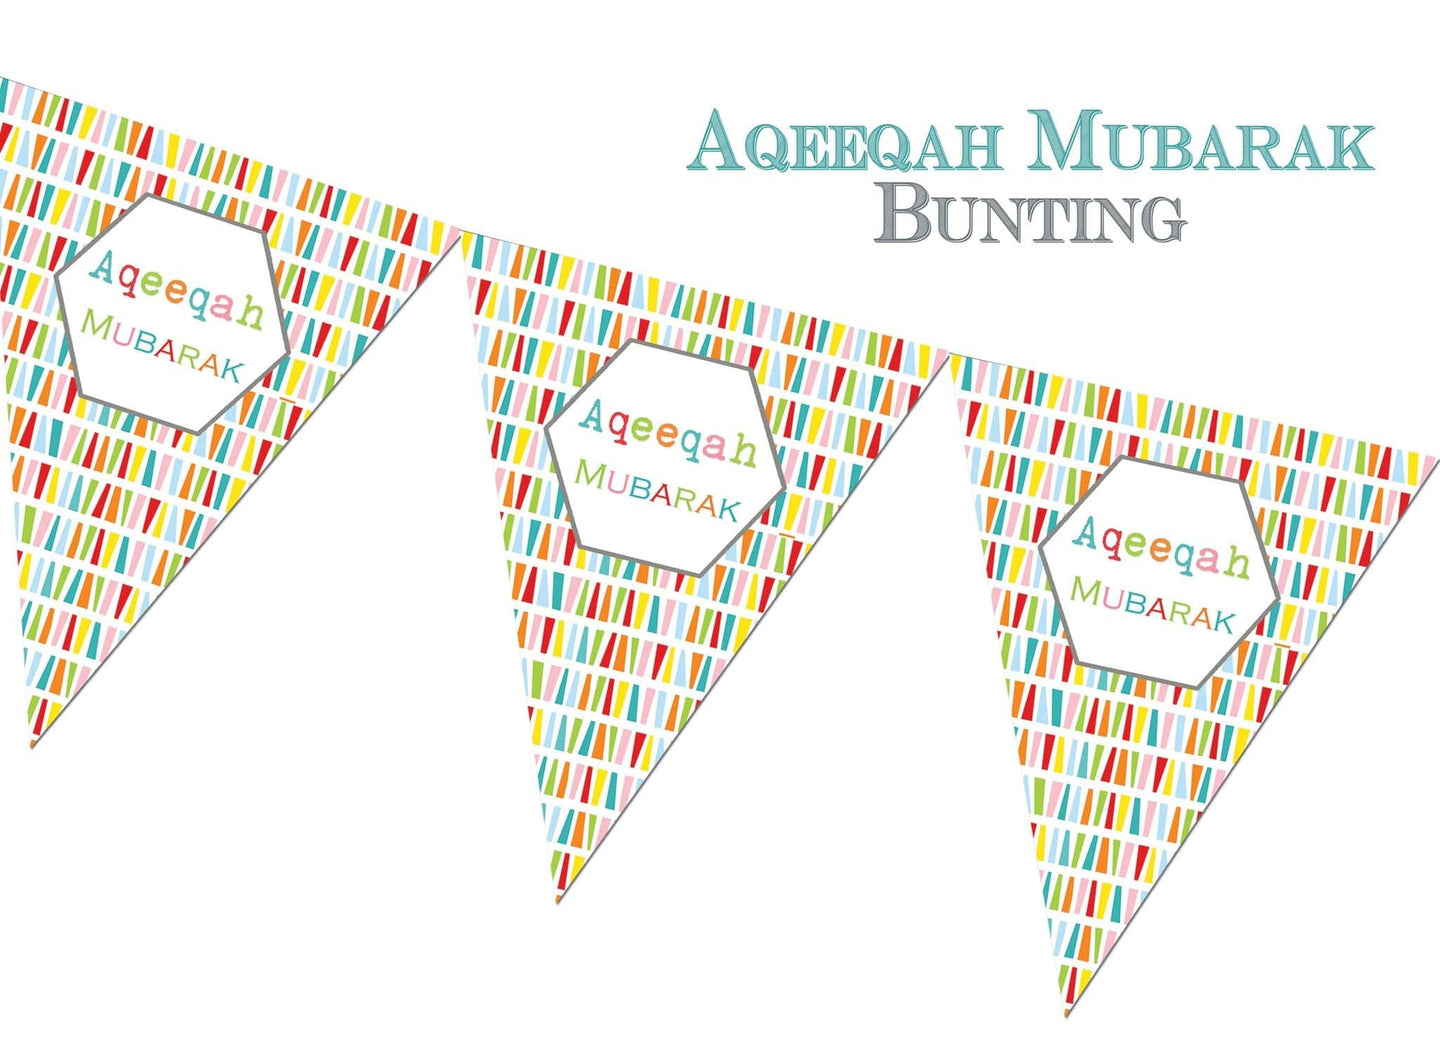 Bunting - Aqeeqah Mubarak | Happy Birthday Bunting